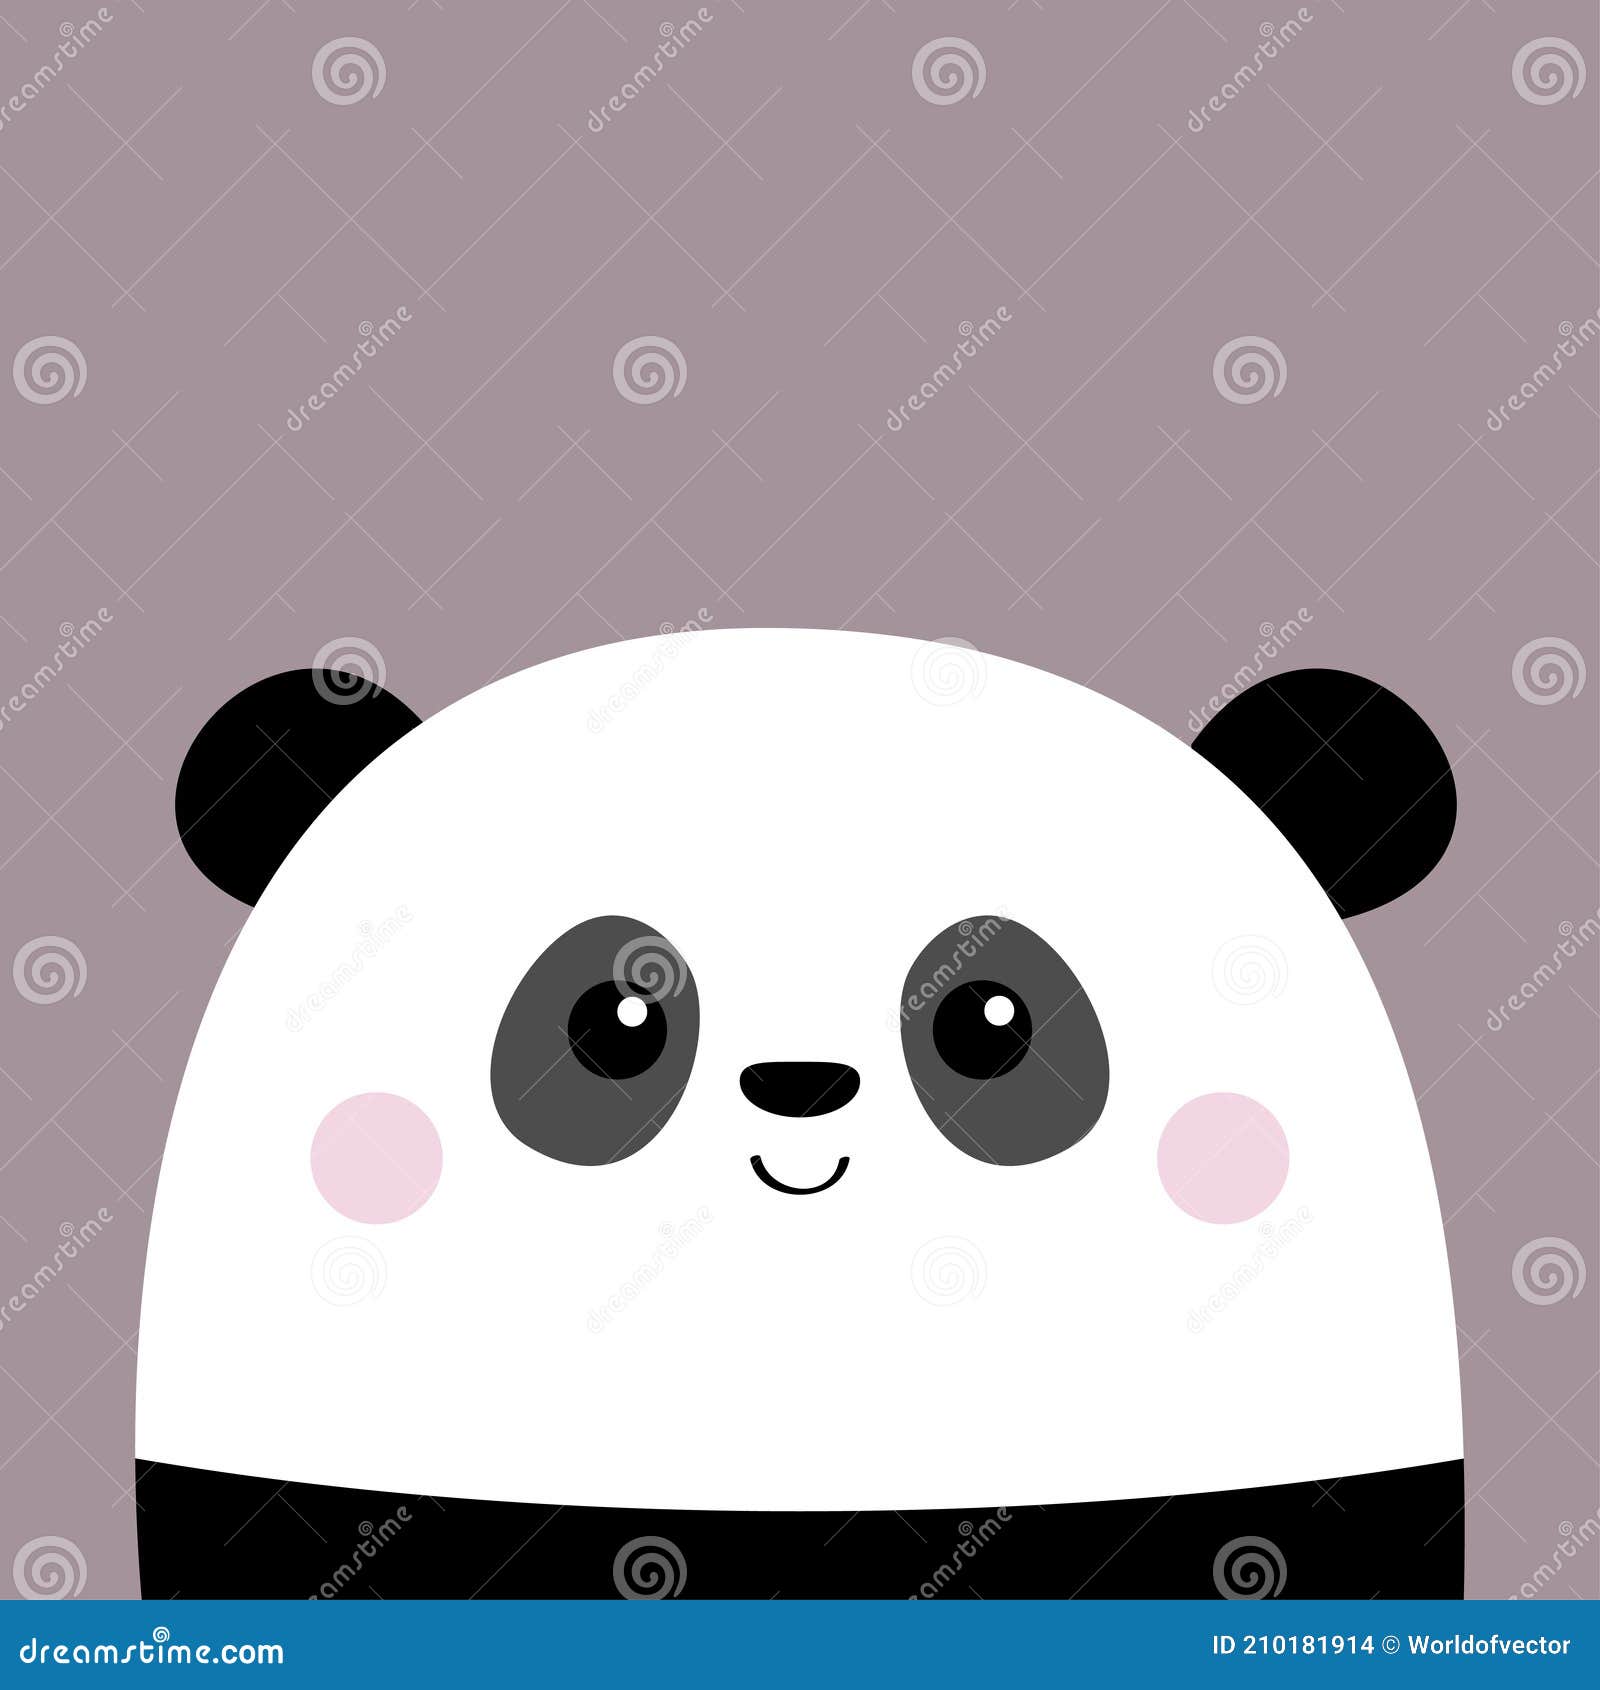 Cara de urso panda bonito. olhar amoroso. personagem de desenho